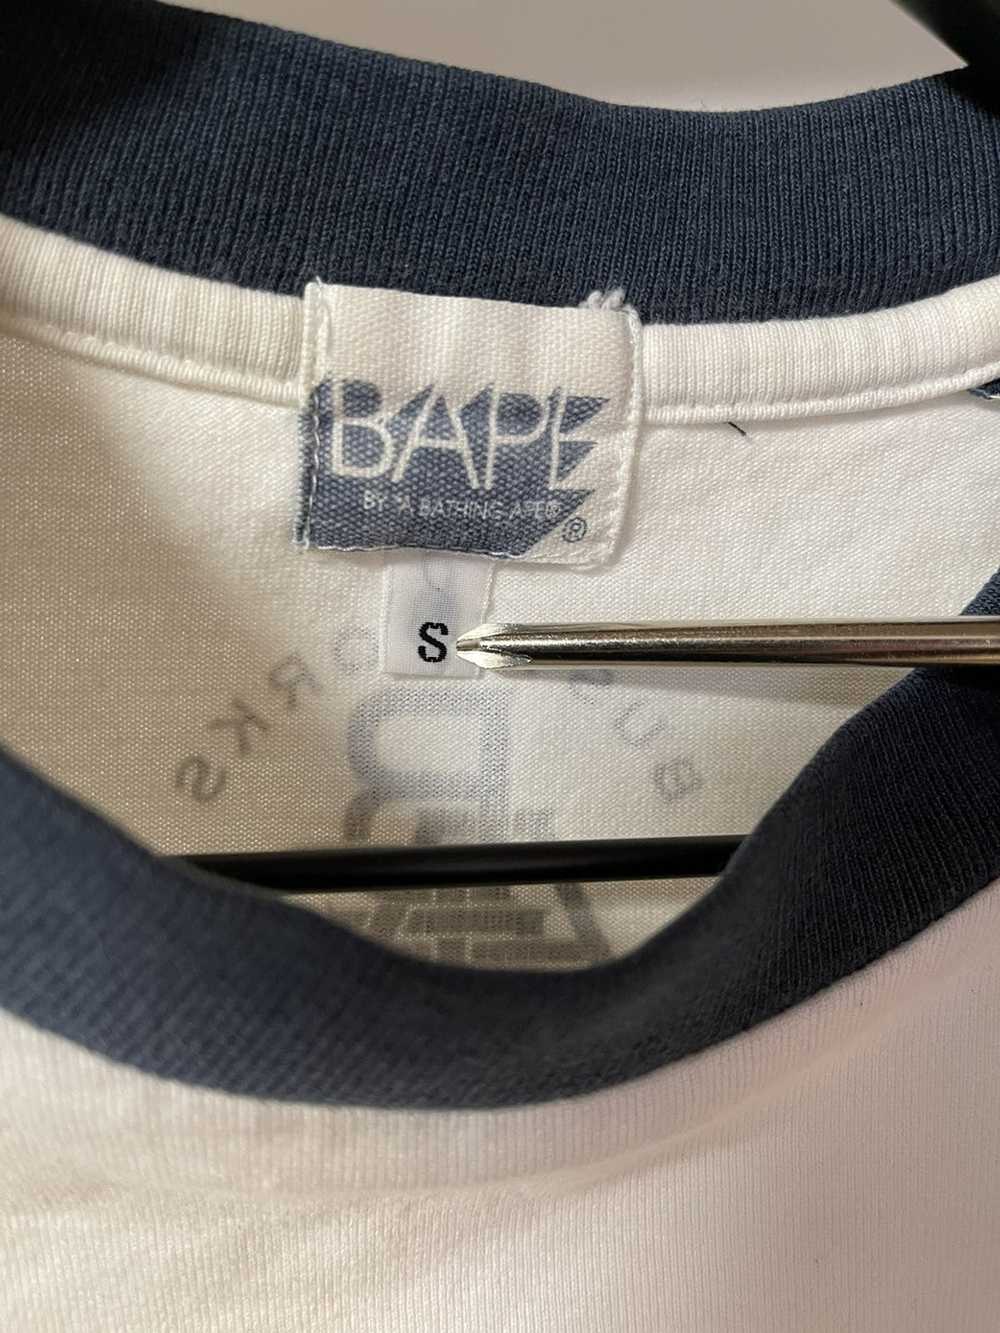 Bape Bape Baseball shirt - image 4